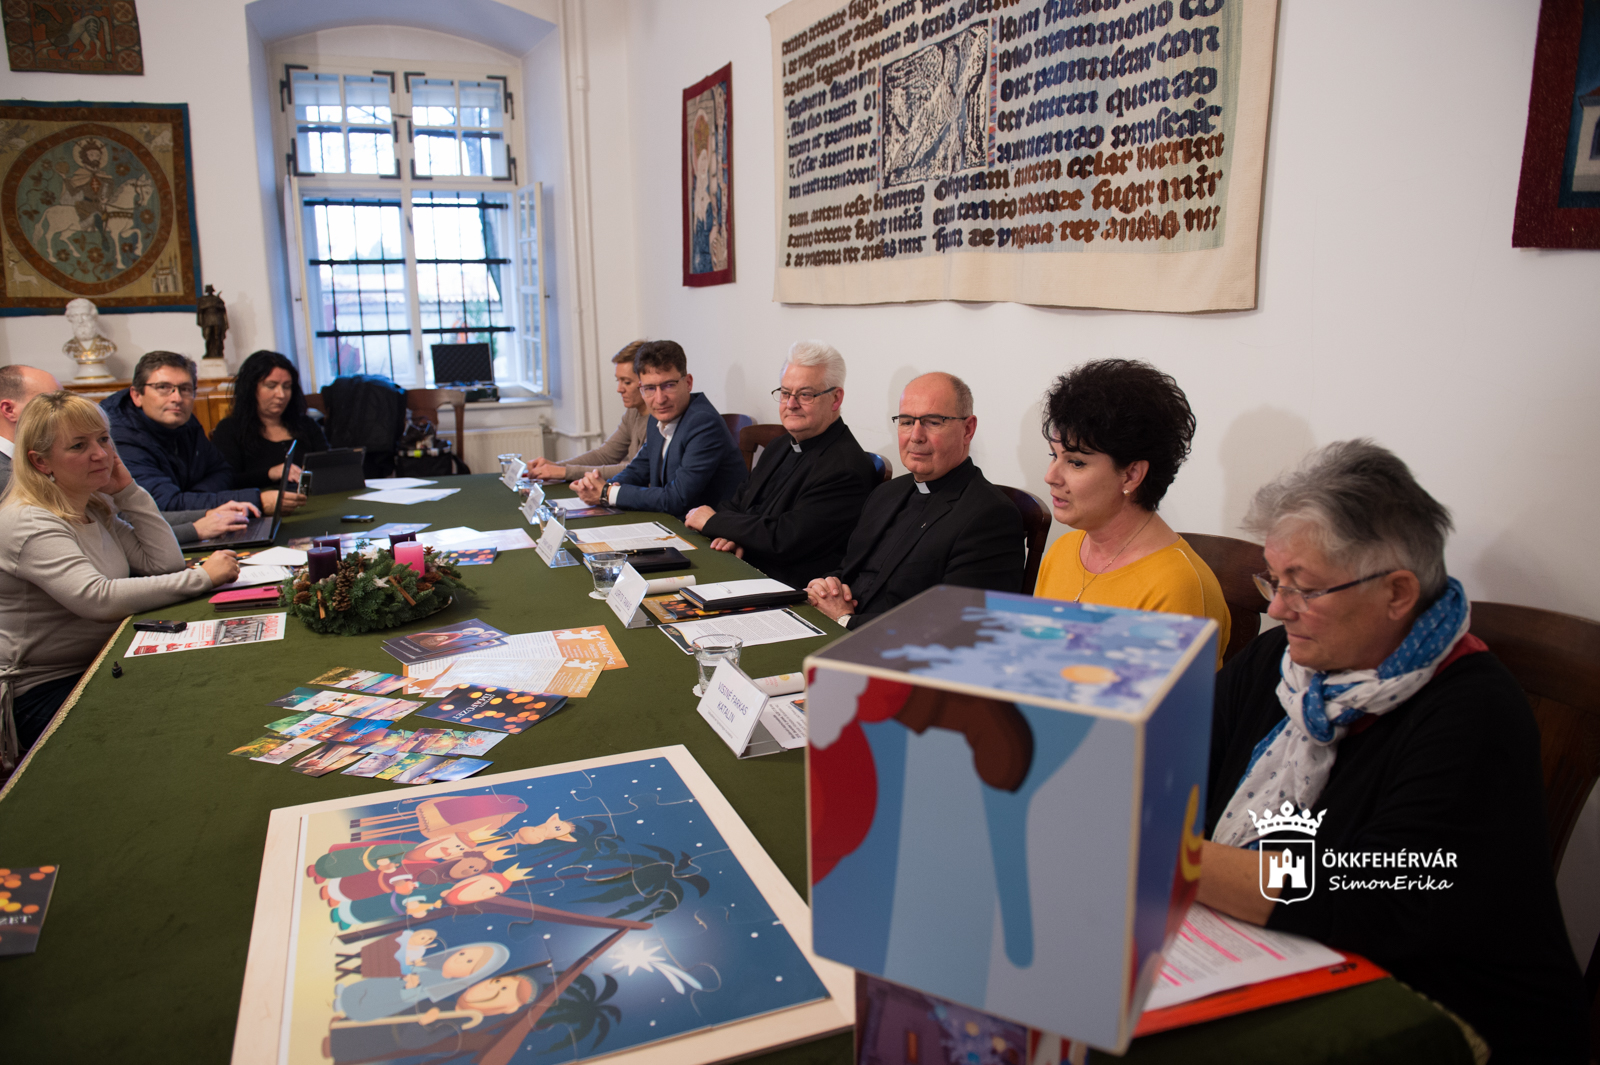 A Fehérvári Advent programjának ismertetése a Püspöki Palotában